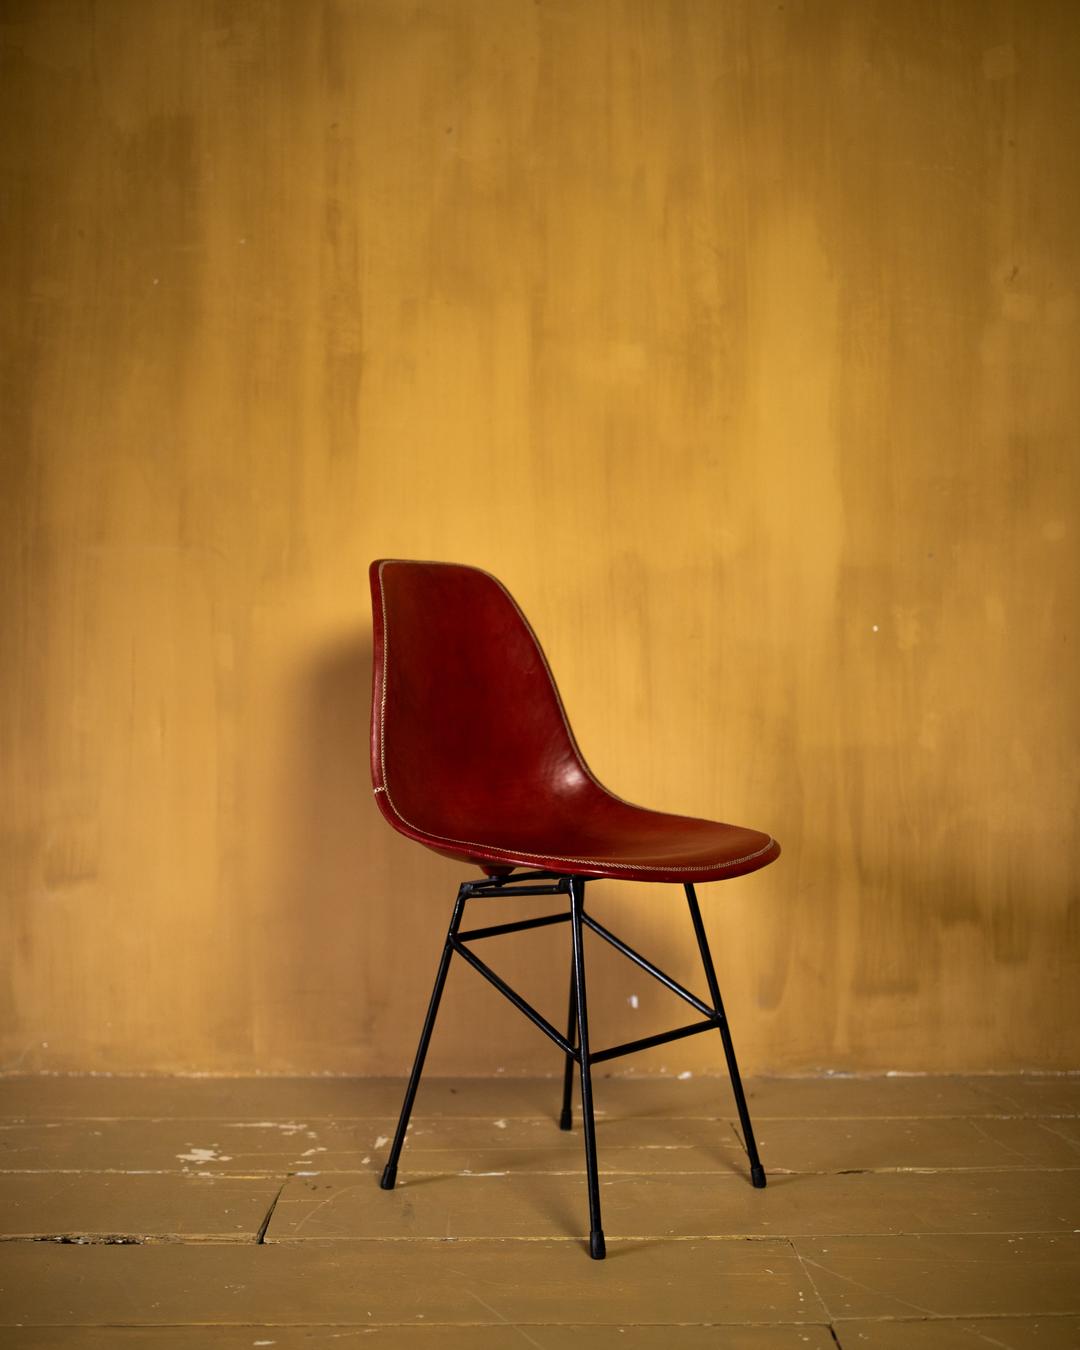 Chair Asunción - Red